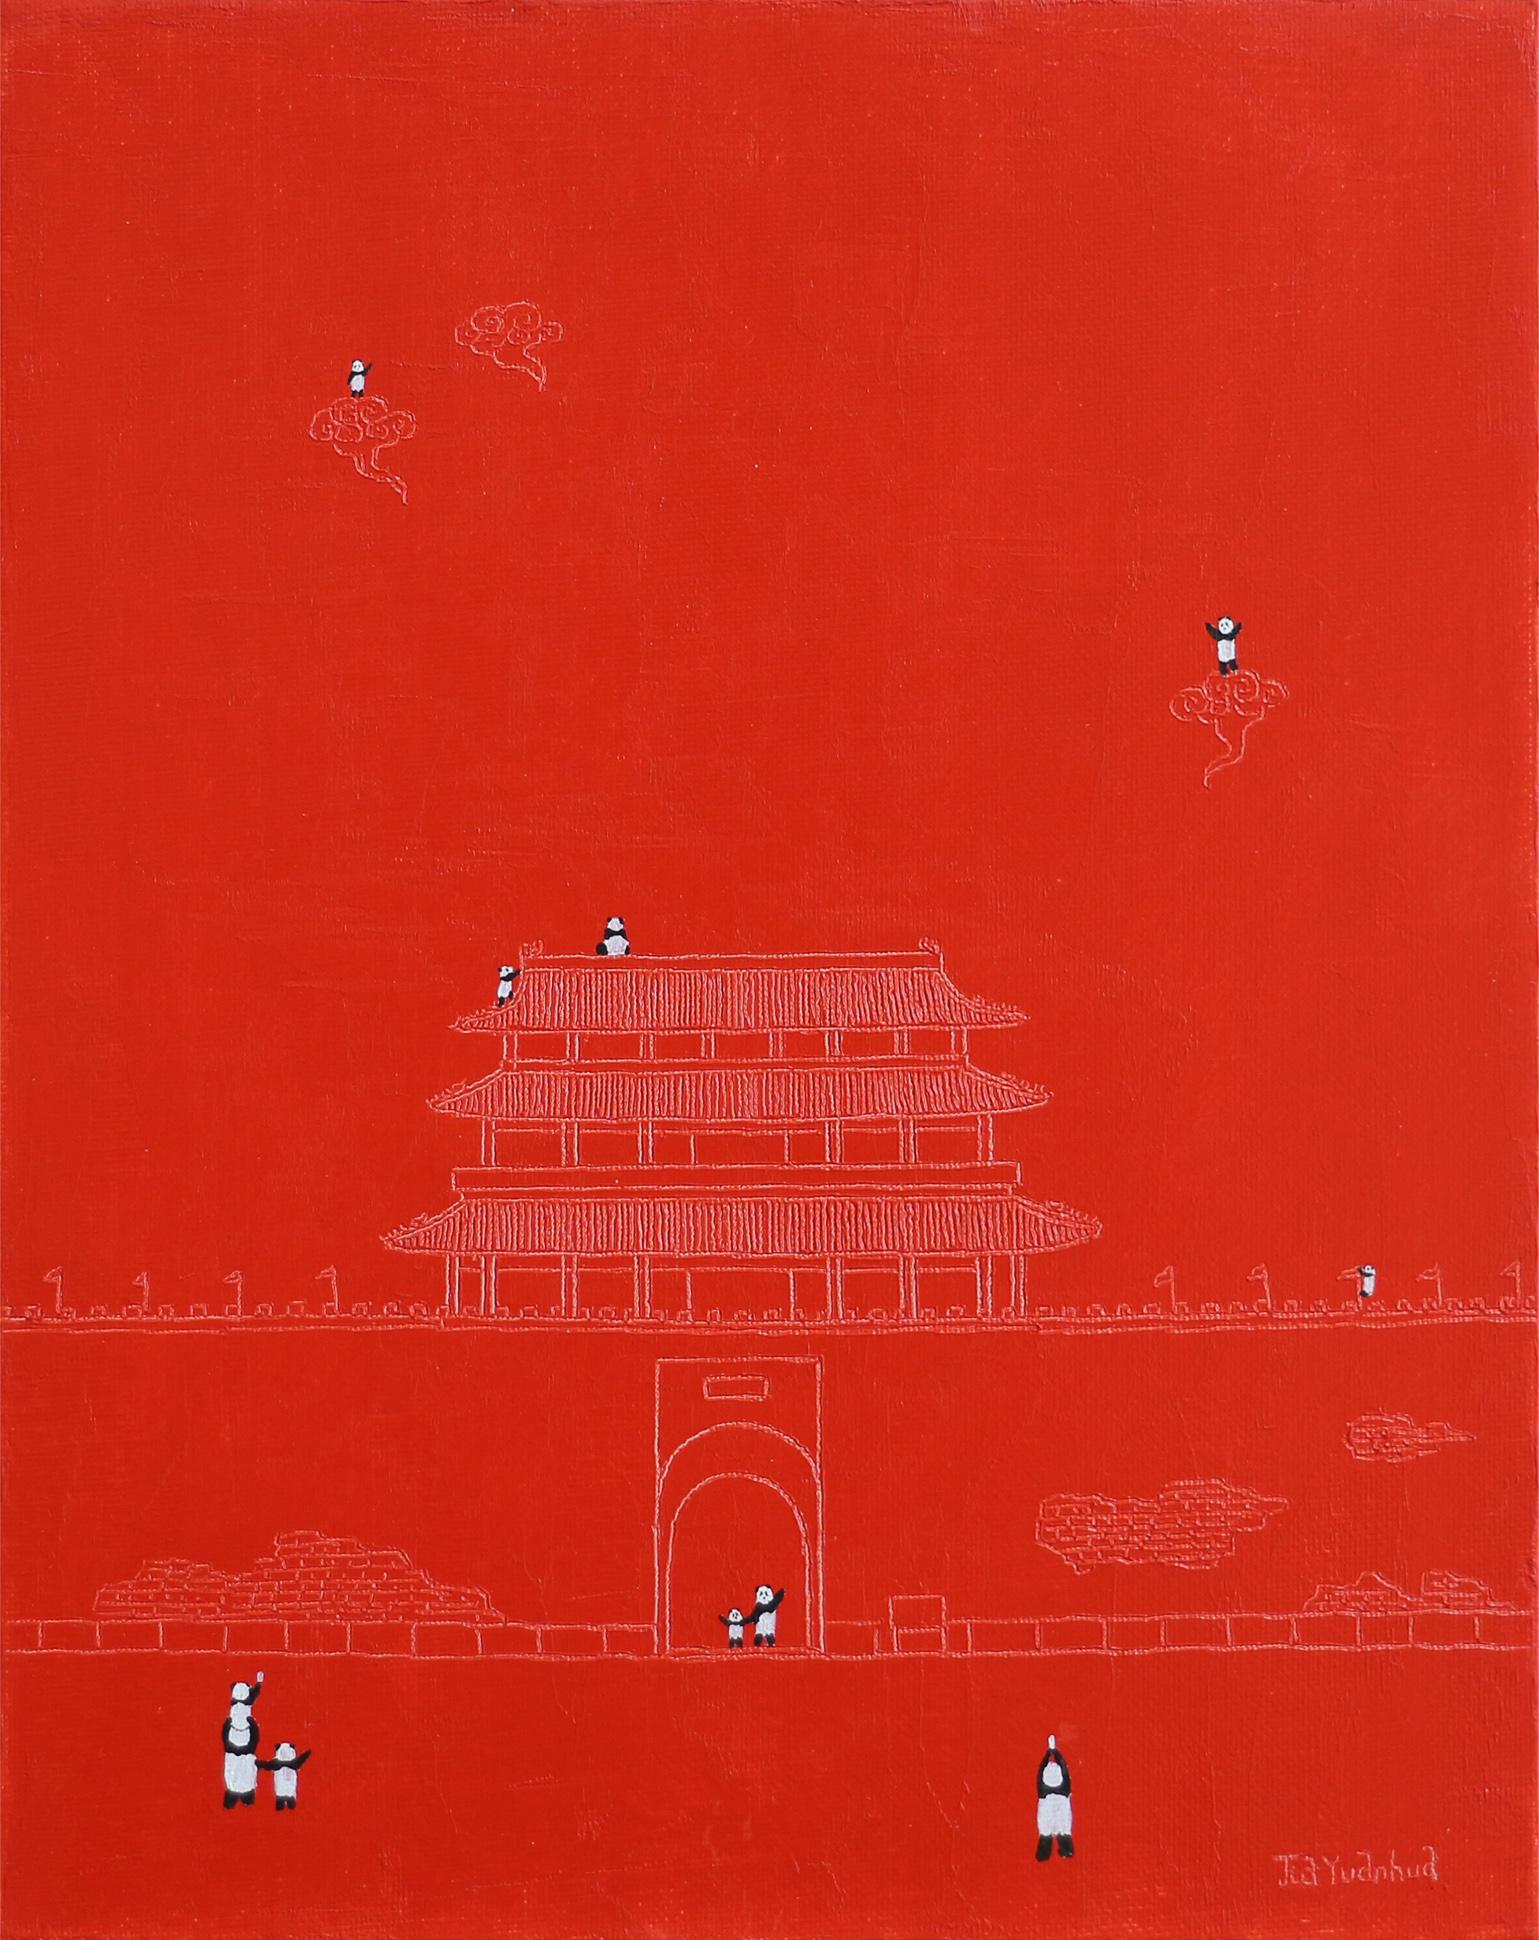 Art contemporain chinois par Jia Yuan-Hua - Sur le nuage